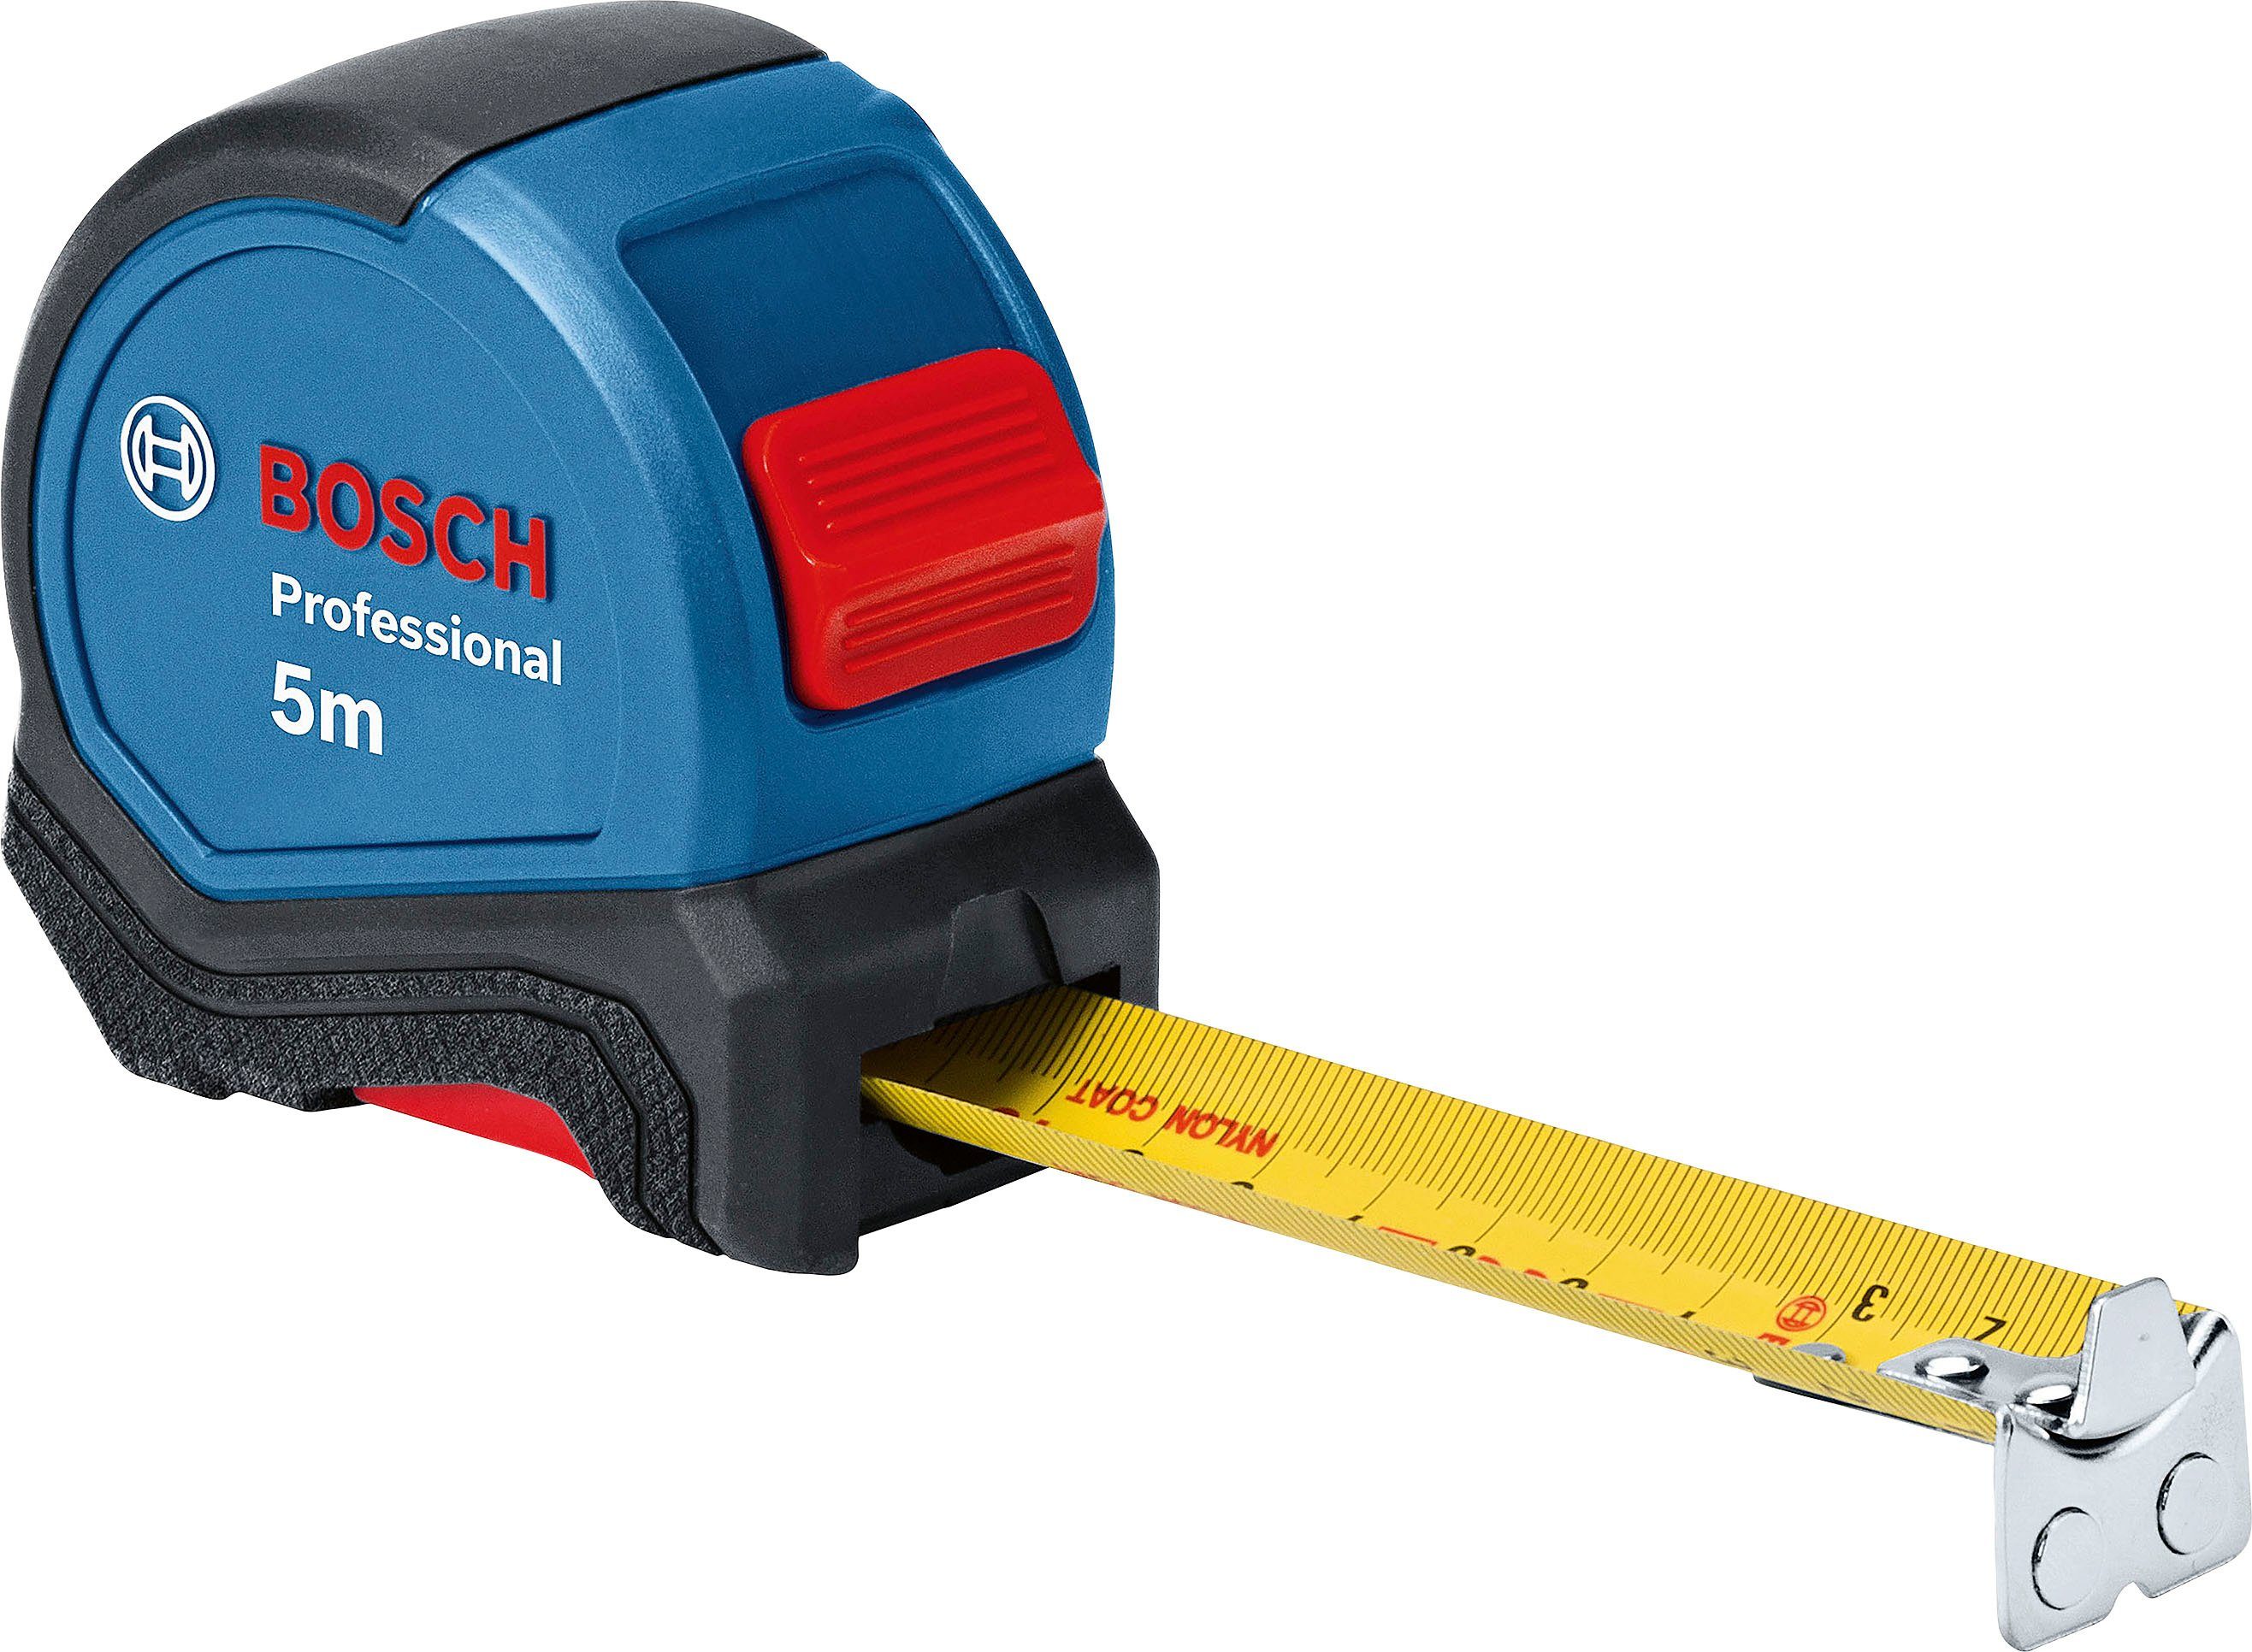 Bosch Professional Werkzeugset (1600A027M3), und Maßband, Ersatzklingen Universalmesser 13-tlg., Wasserwaage